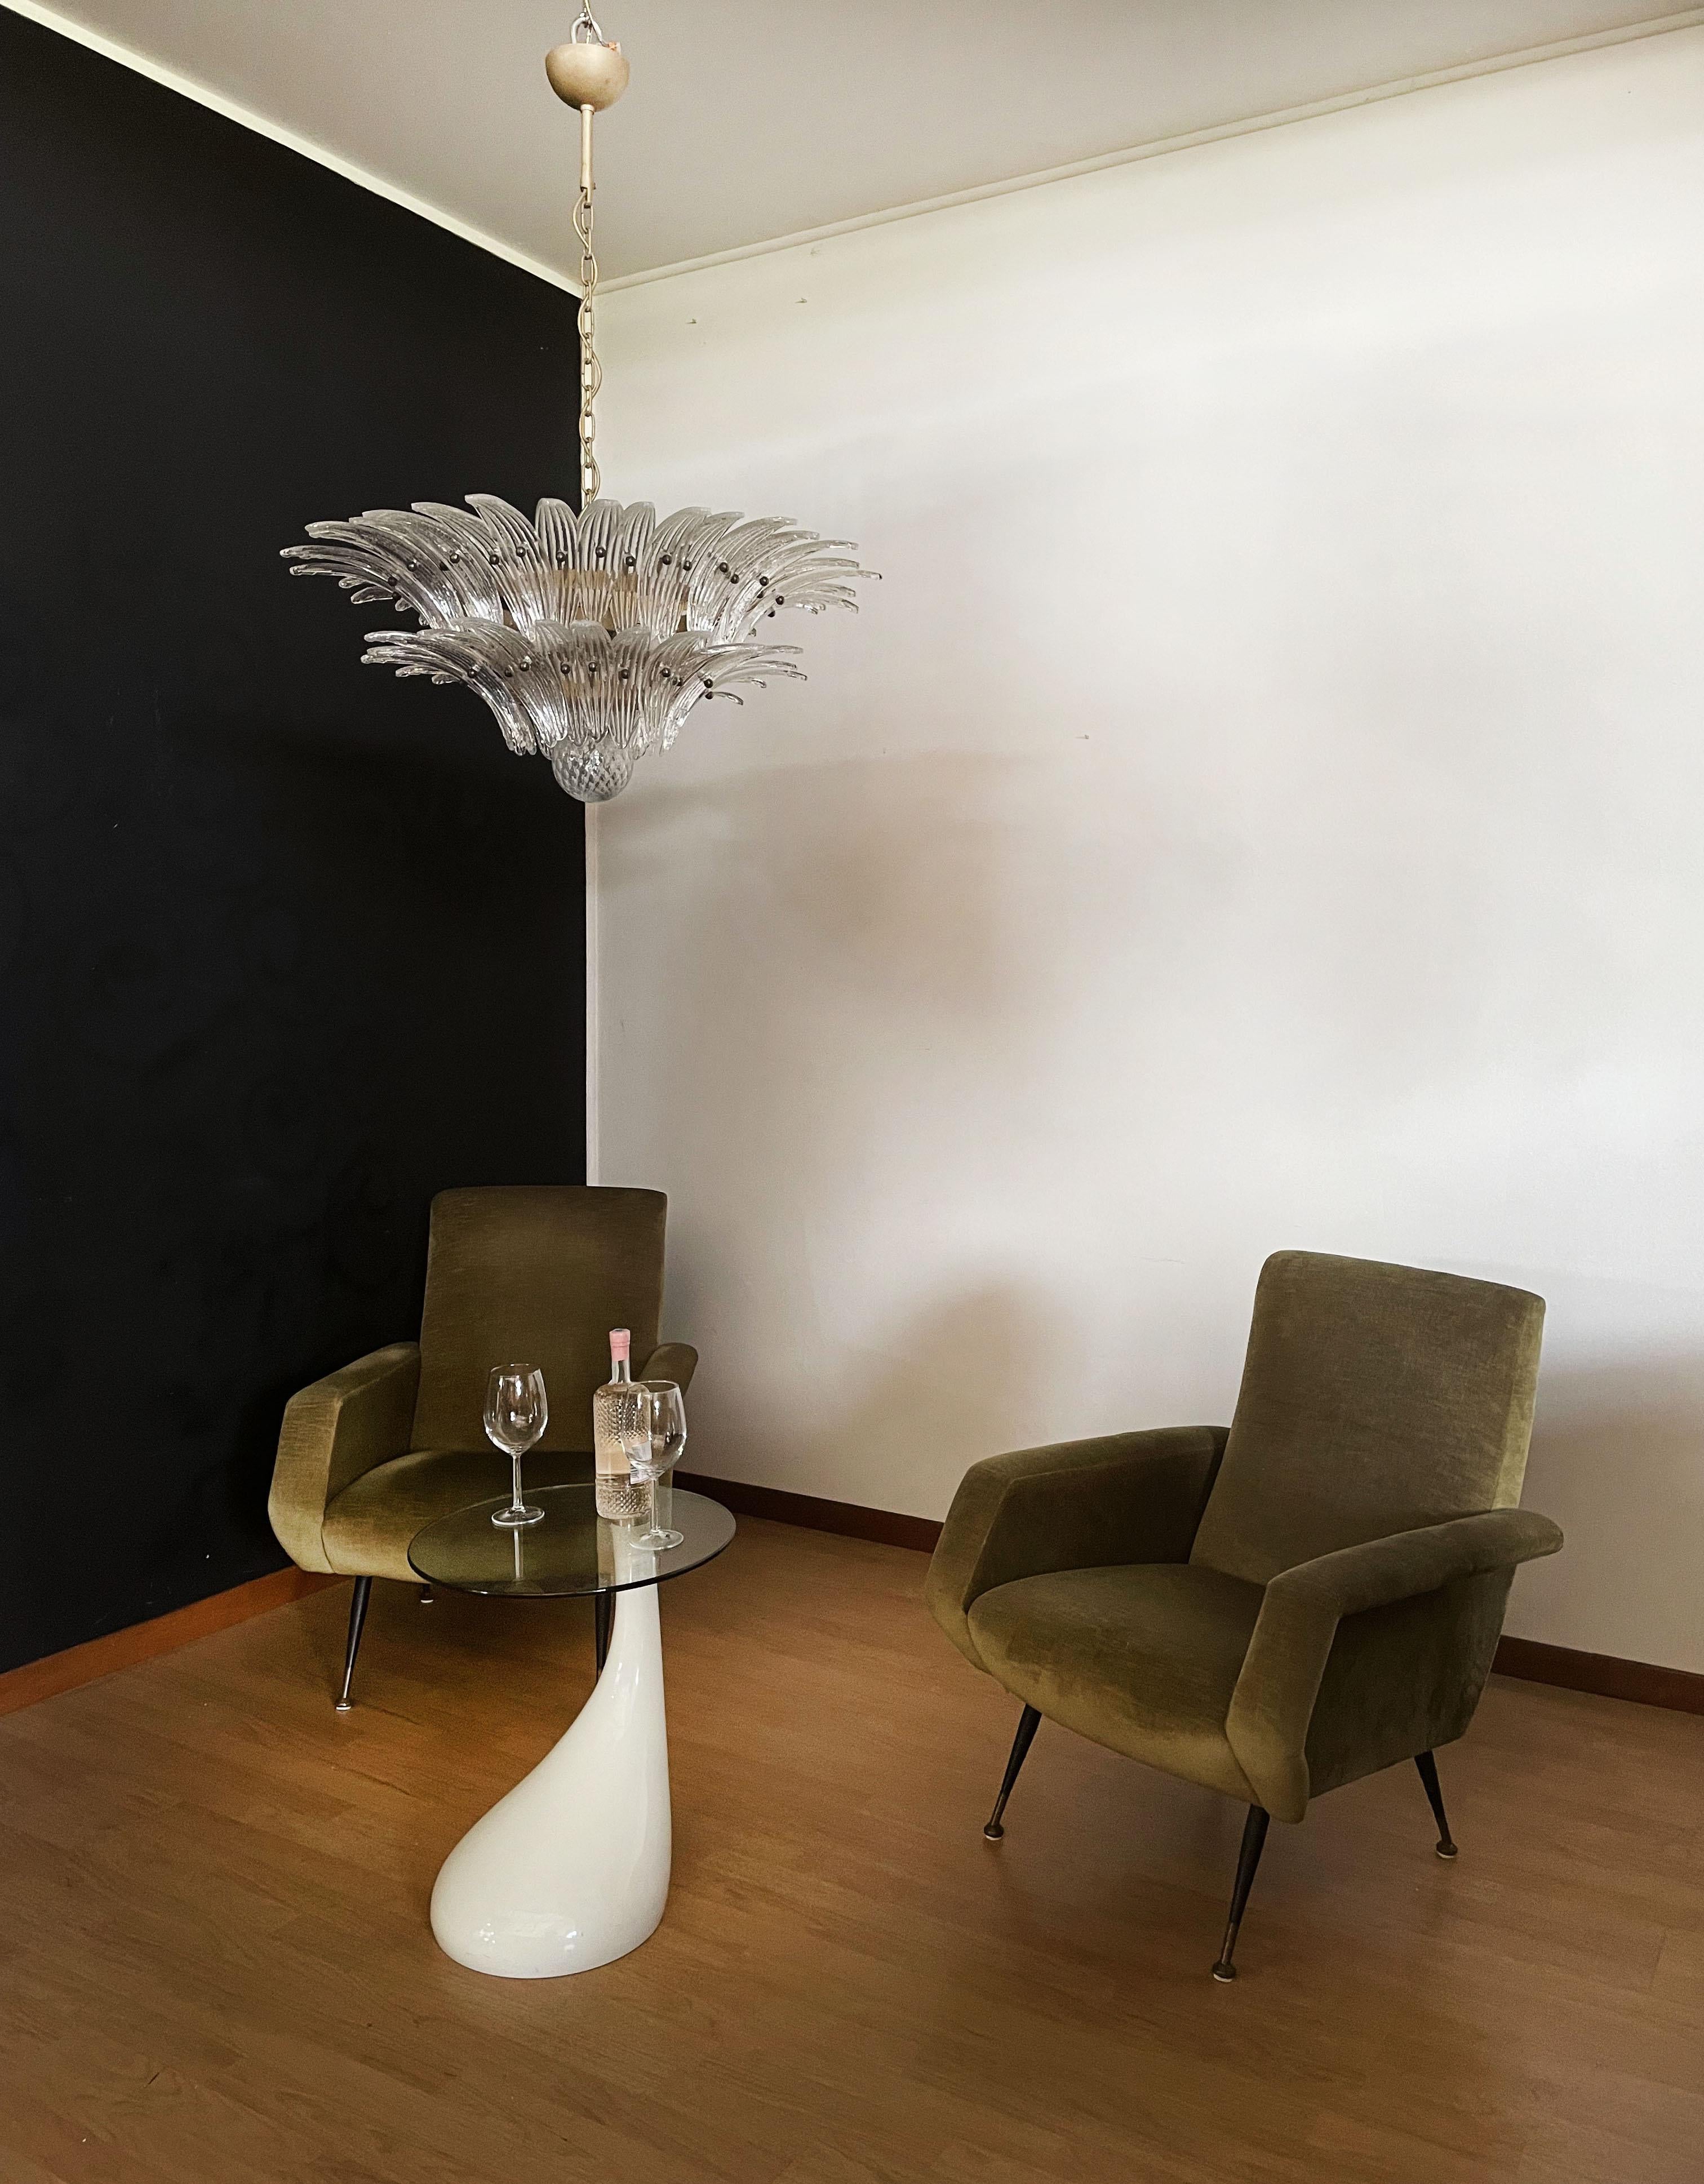 Murano Chandelier Original Palmette, Trasparent Glass In Good Condition In Gaiarine Frazione Francenigo (TV), IT